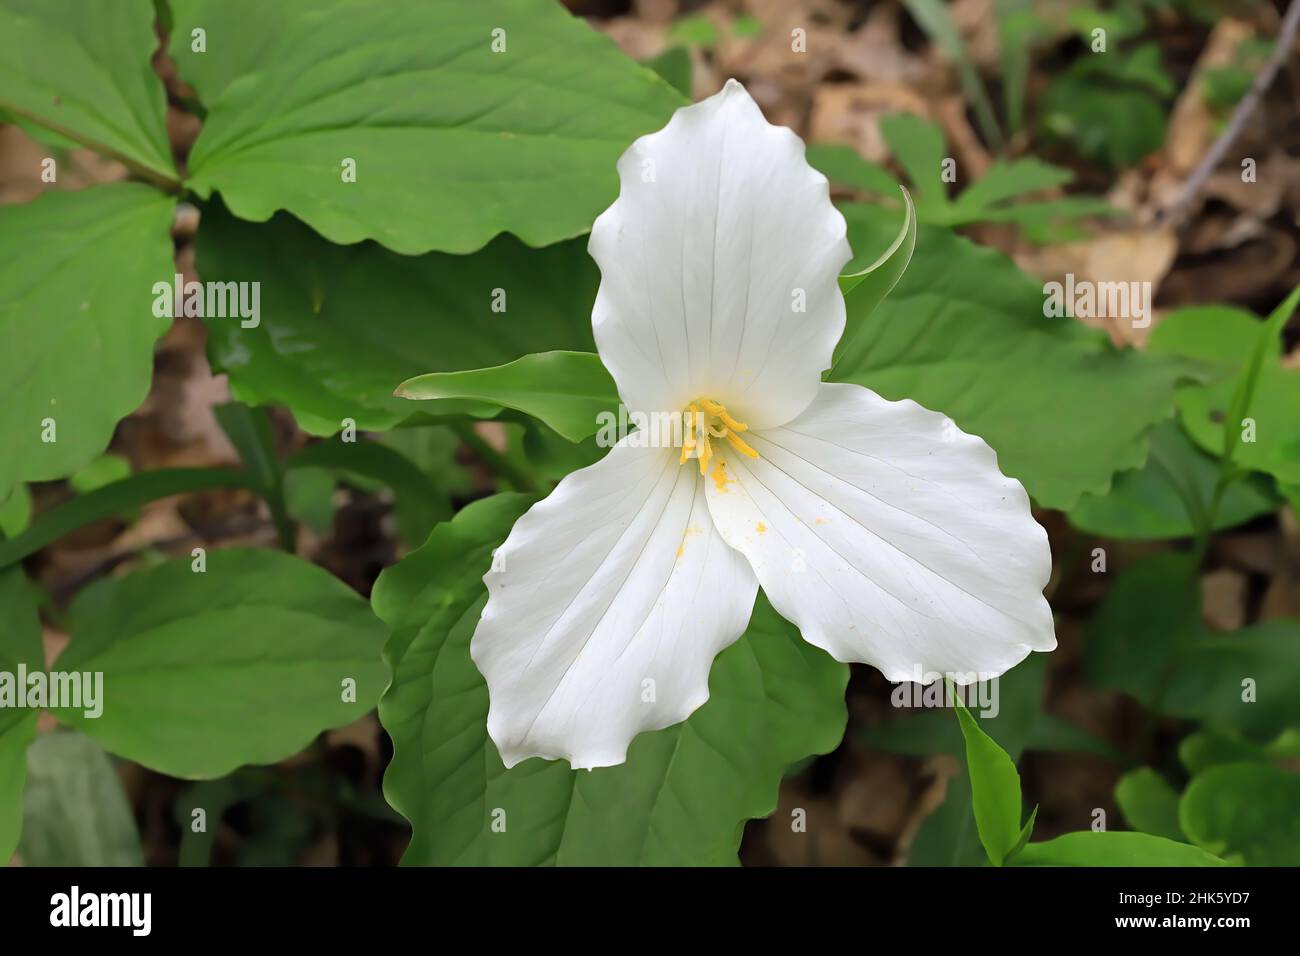 Bellissimo trillium bianco, tre petali trovato in crescita nei boschi primaverili. Foto Stock